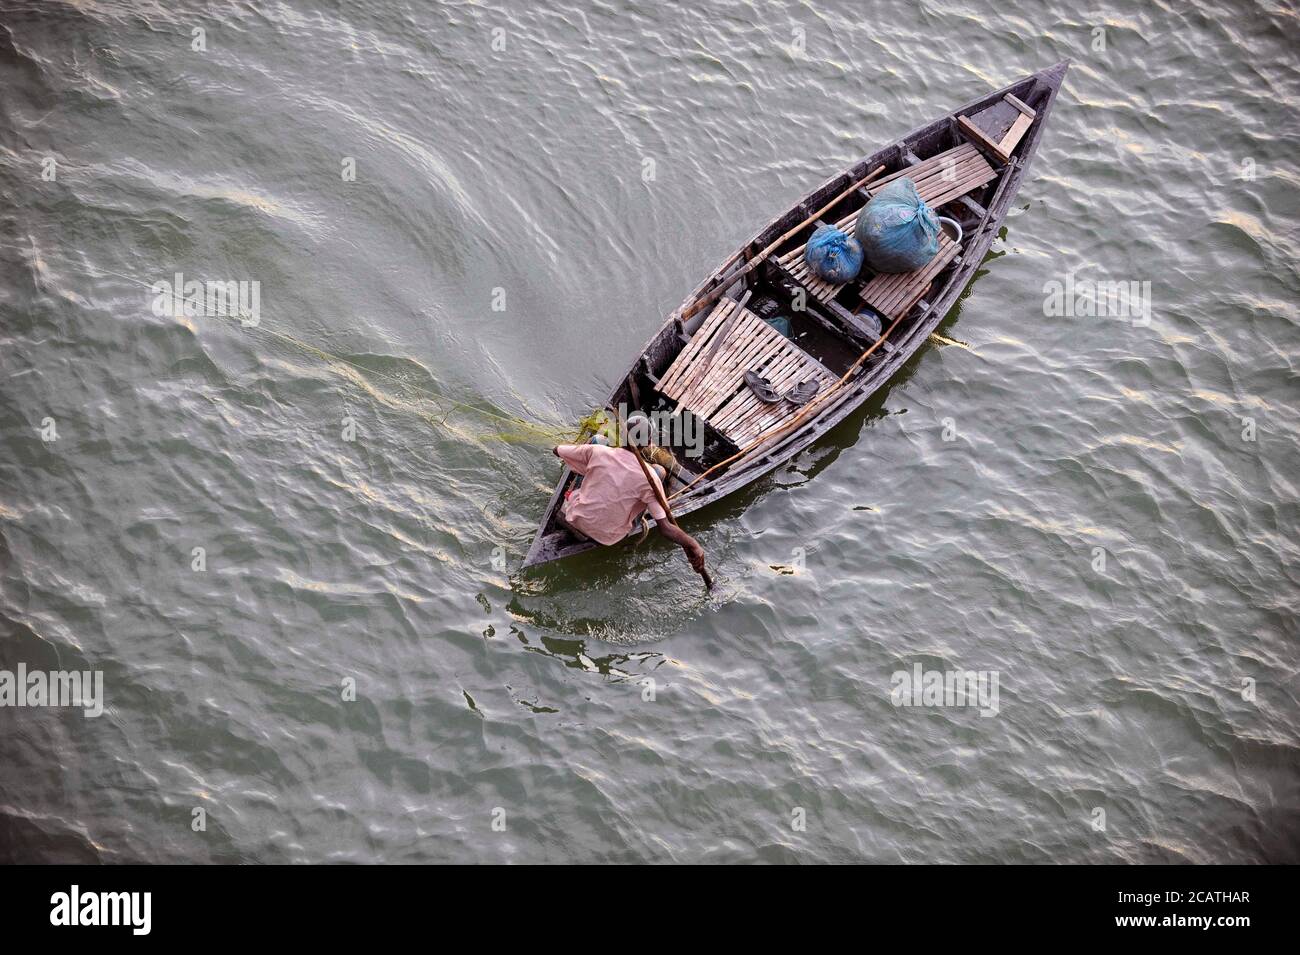 Ein Fischer sah versuchen, einige Fische zu fangen. Im Delta der Flüsse Ganga (Padma), Brahmaputra und Meghna leben Menschen auf dem Wasser. Stockfoto